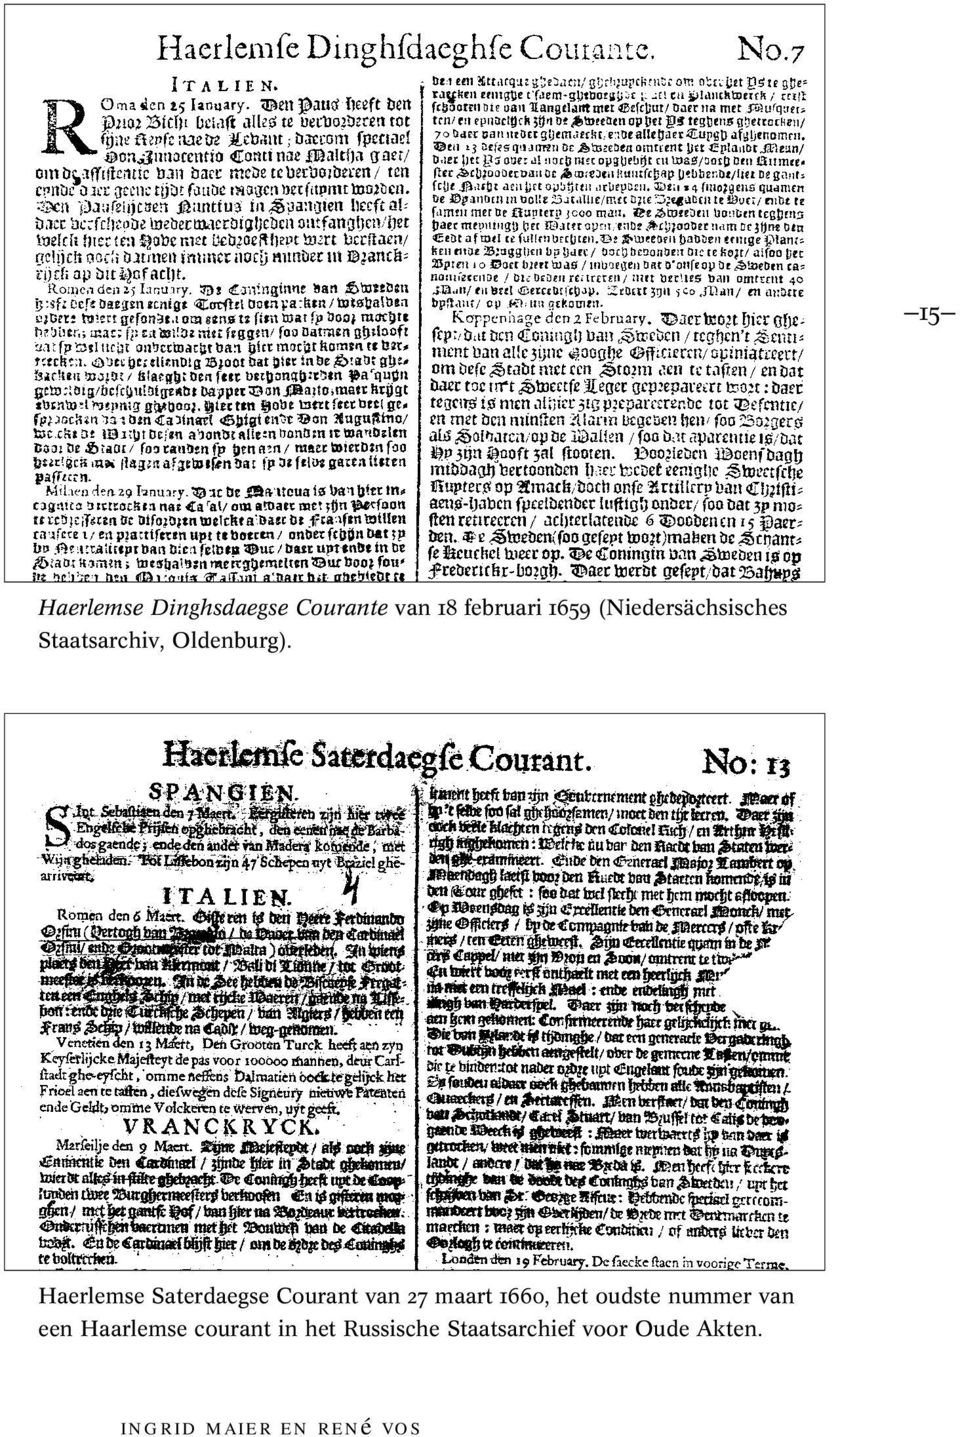 Haerlemse Saterdaegse Courant van 27 maart 1660, het oudste nummer